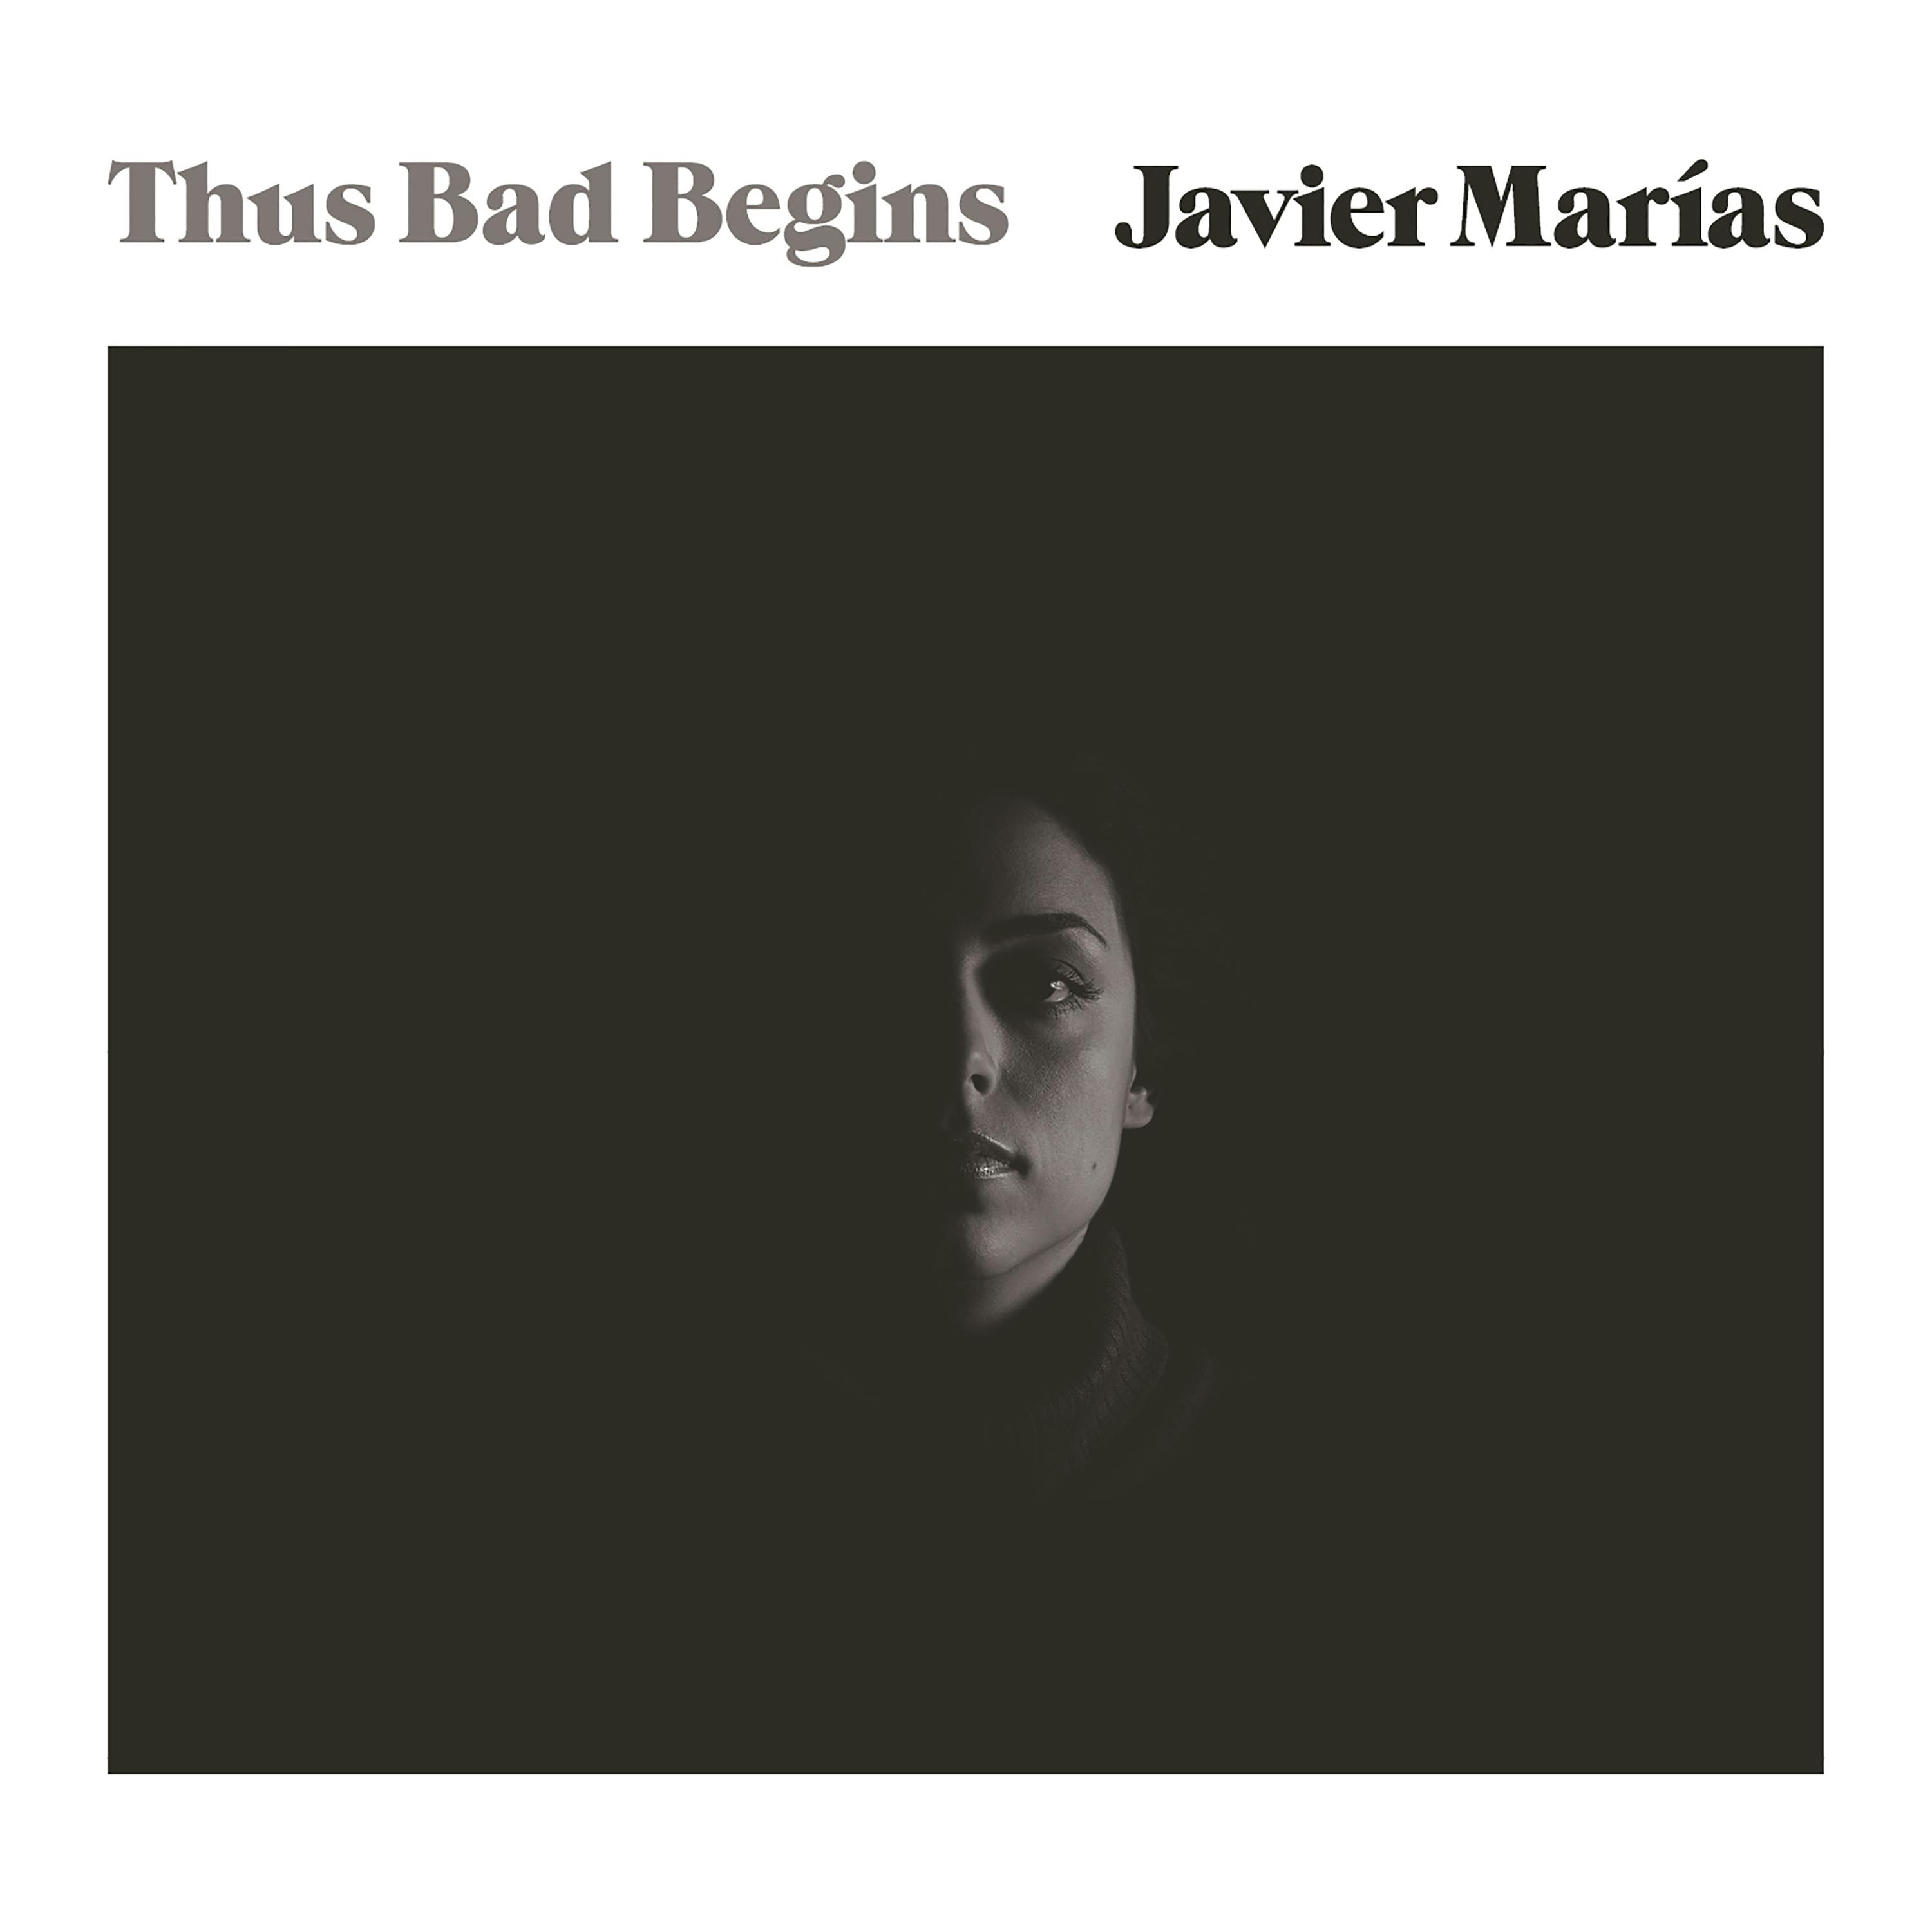 Thus Bad Begins: A Novel - Javier Marias, Margaret Jull Costa